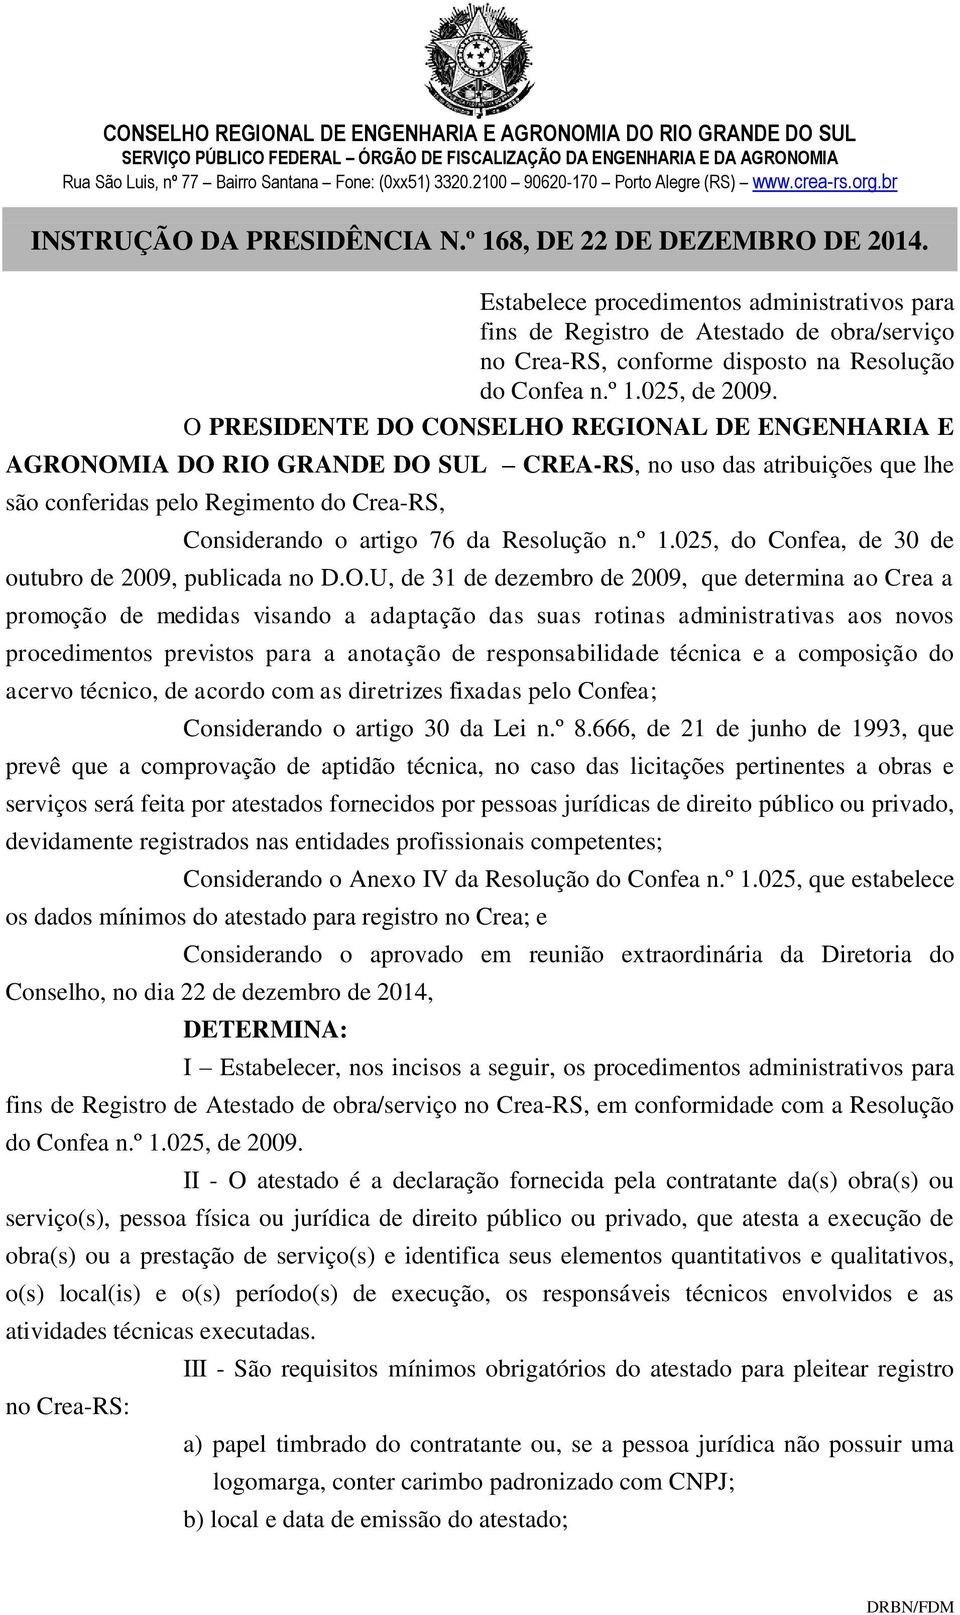 O PRESIDENTE DO CONSELHO REGIONAL DE ENGENHARIA E AGRONOMIA DO RIO GRANDE DO SUL CREA-RS, no uso das atribuições que lhe são conferidas pelo Regimento do Crea-RS, Considerando o artigo 76 da